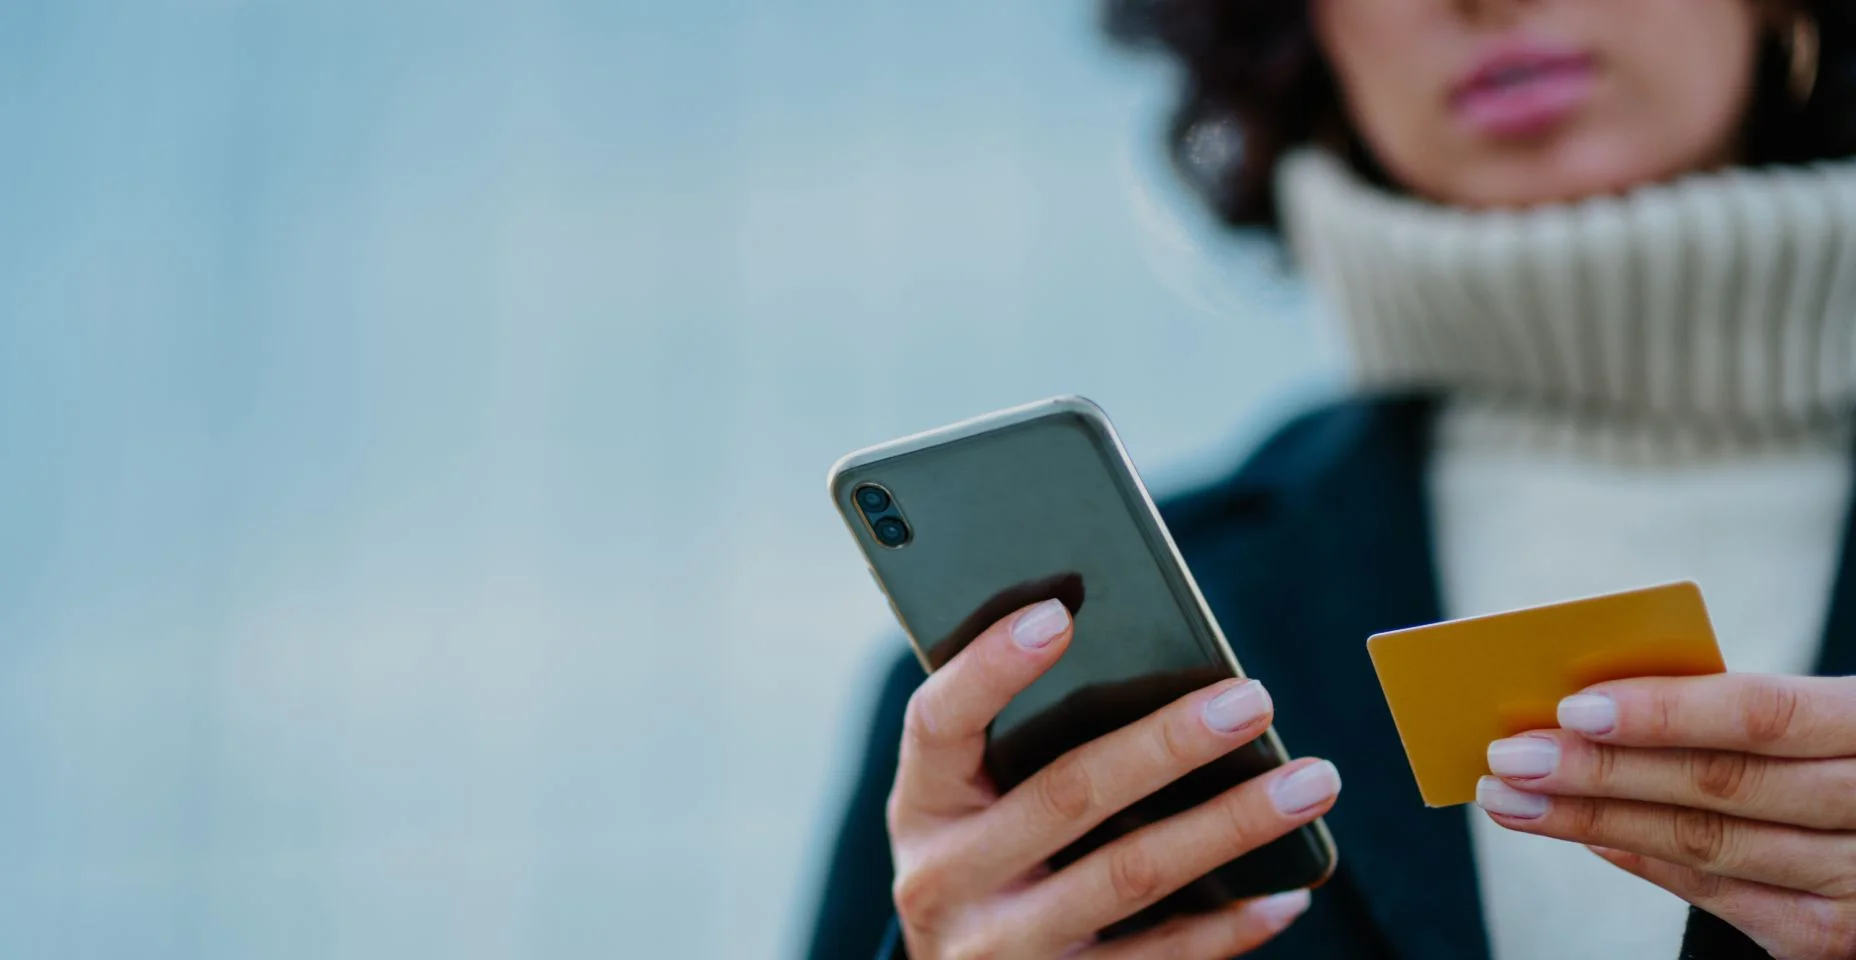 Foto recortada das mãos de uma garota segurando um telefone inteligente e um cartão de crédito.